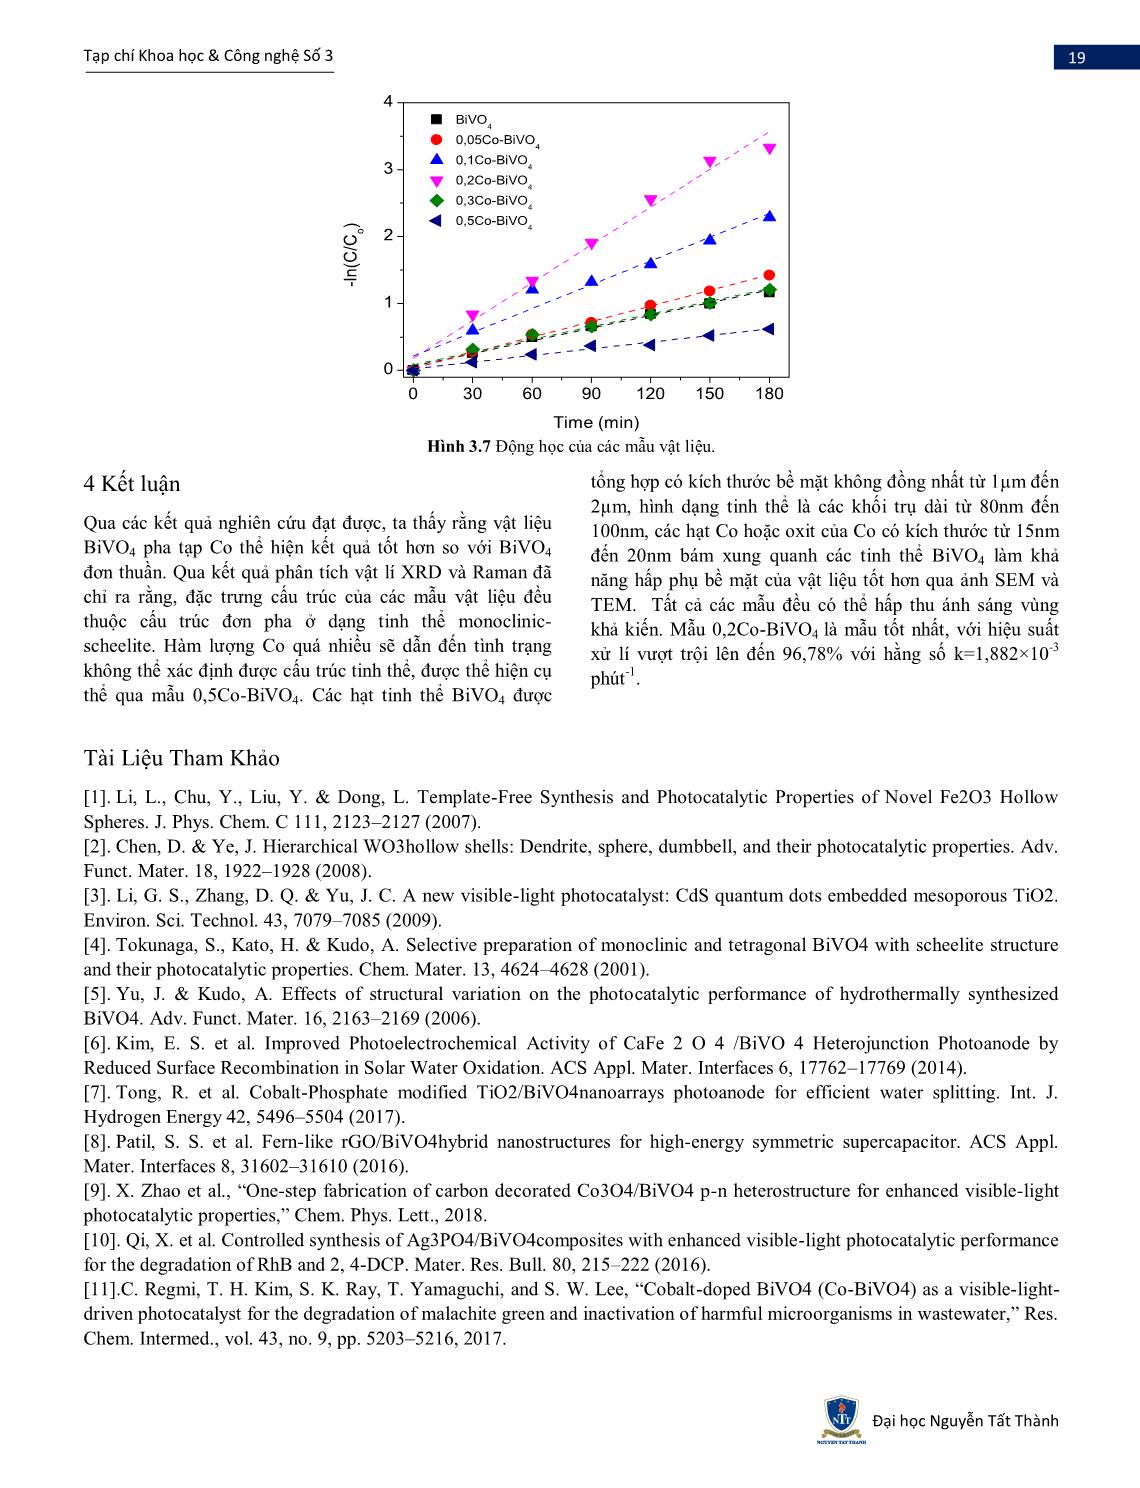 Nghiên cứu tổng hợp Co-BiVO4 bằng phương pháp thủy nhiệt và đánh giá khả năng quang xúc tác sử dụng ánh sáng nhìn thấy trang 6